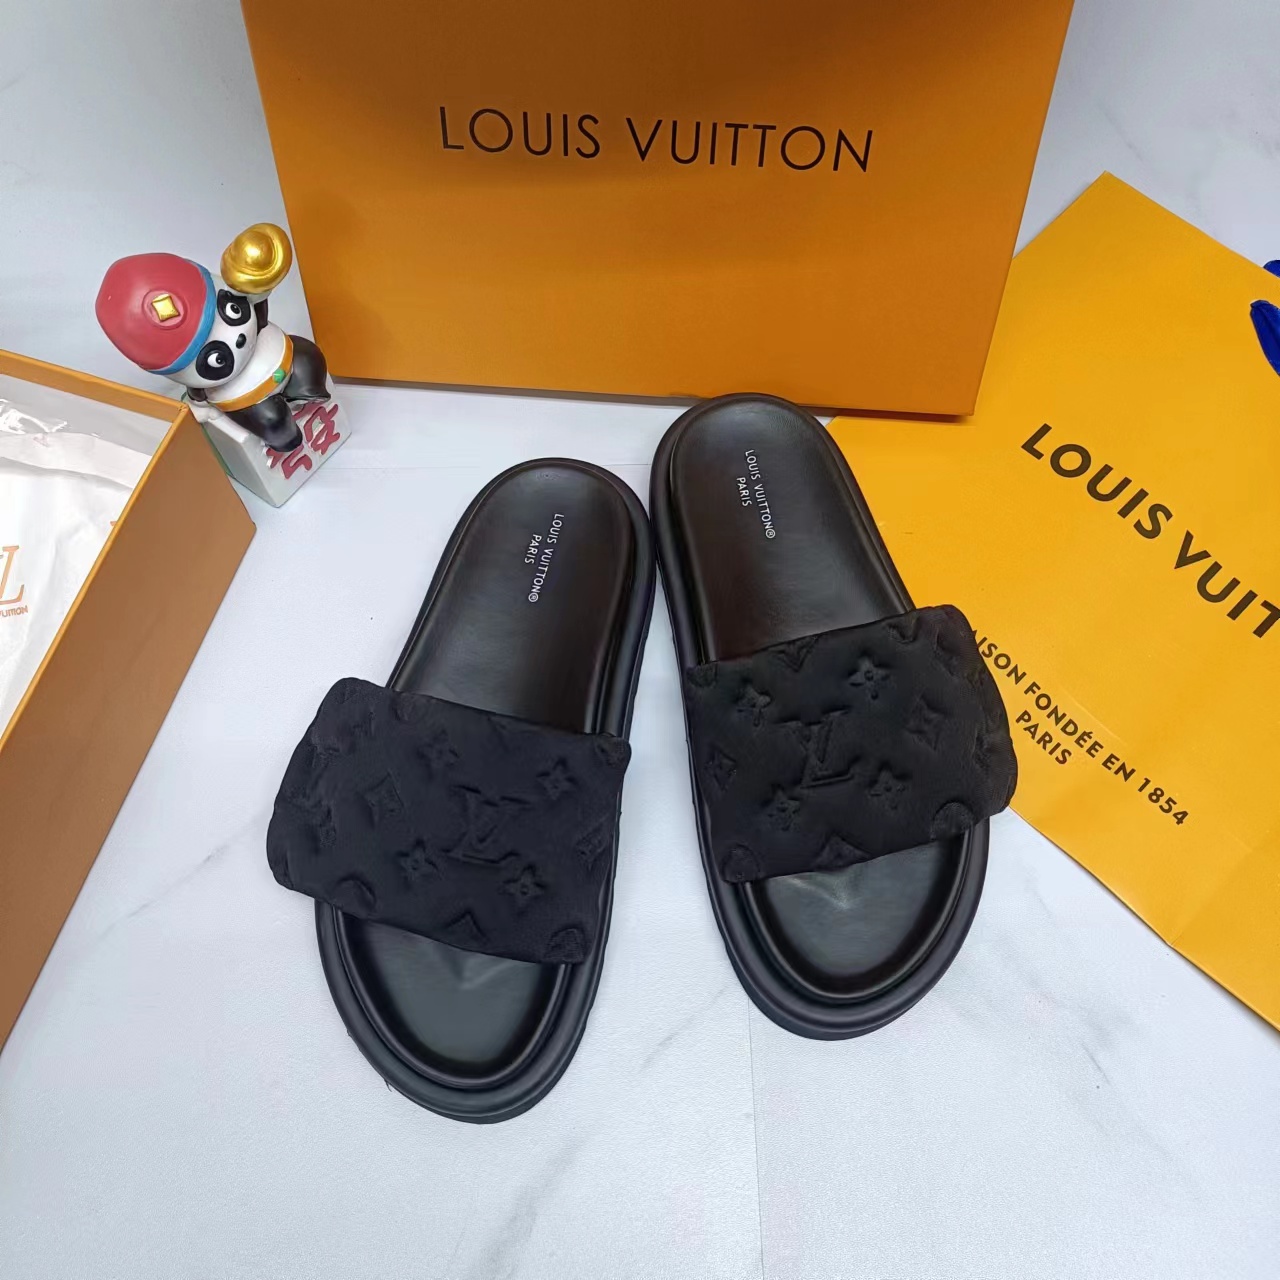 LV slippers